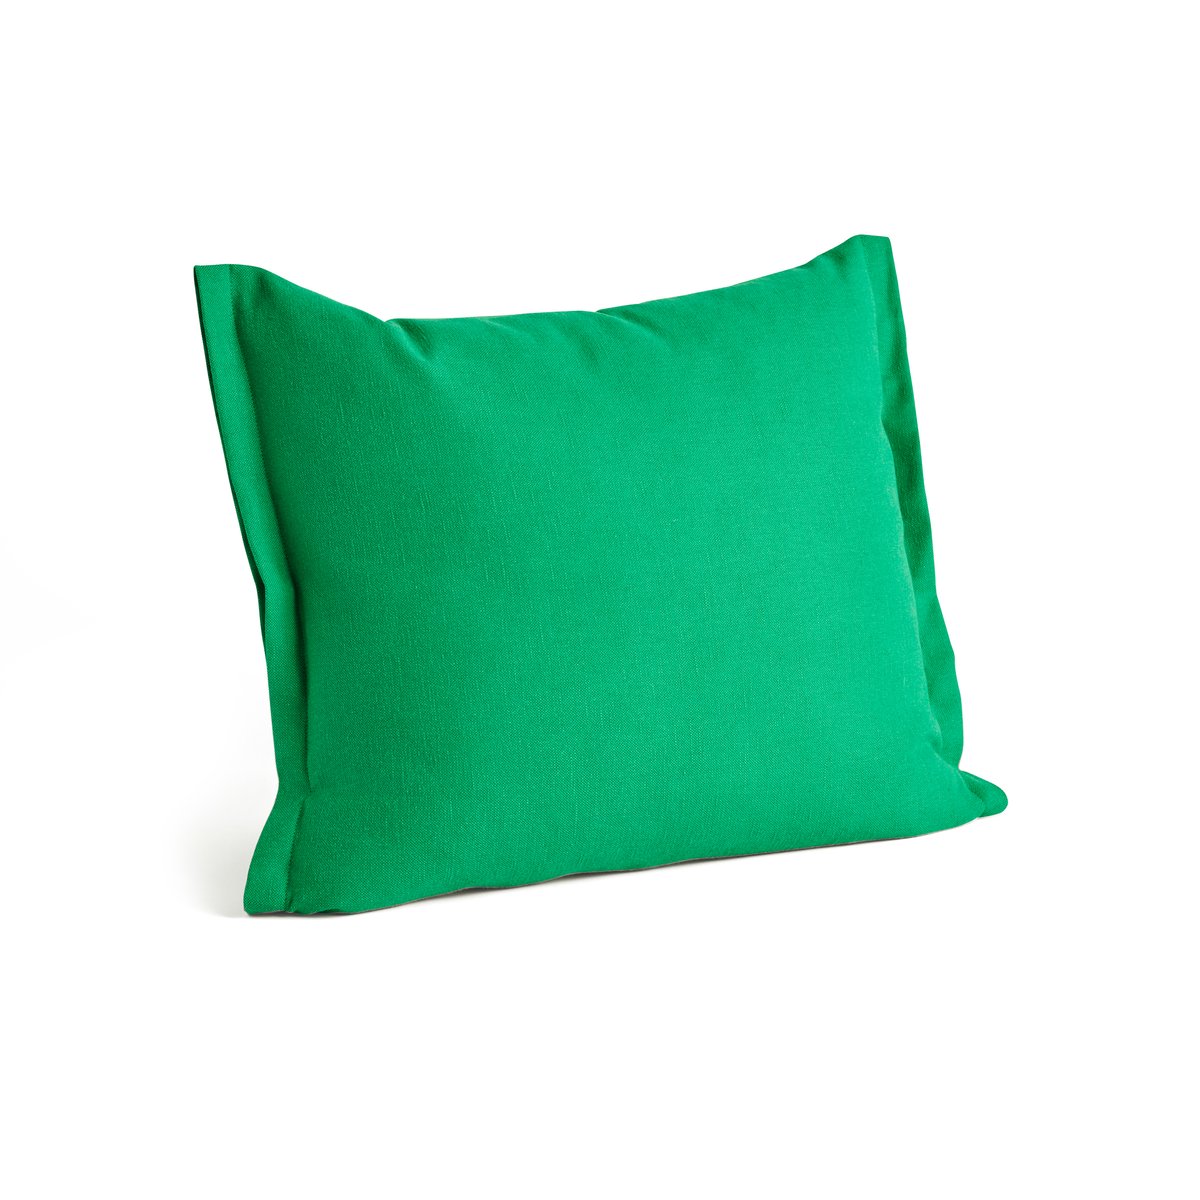 HAY Plica tyyny 55×60 cm Emerald green